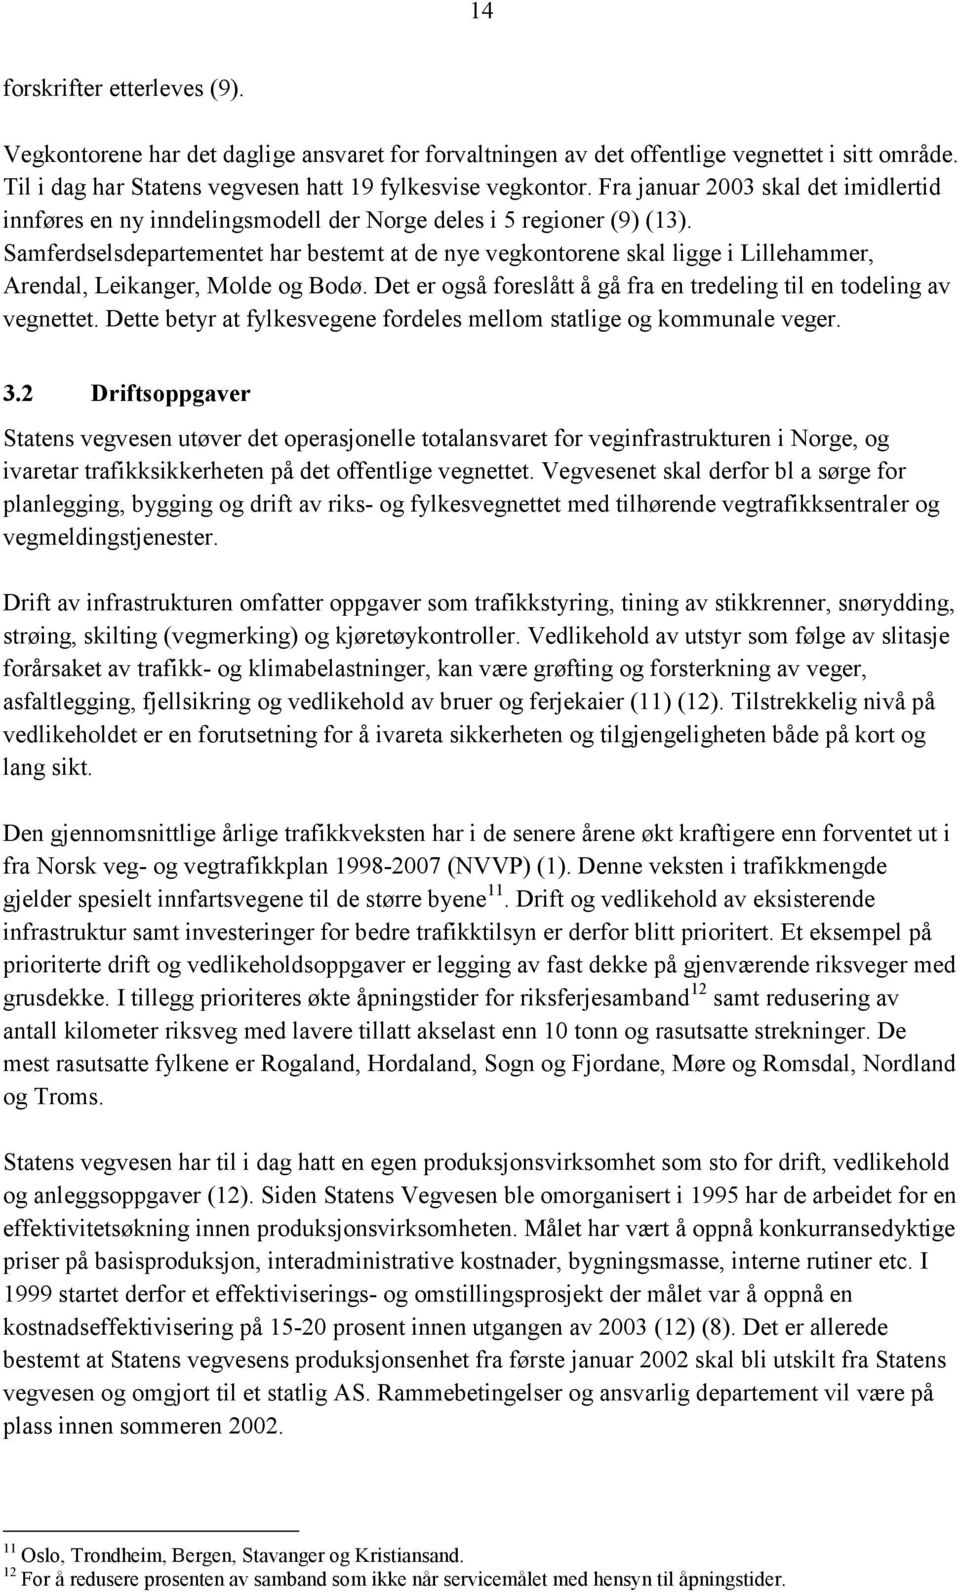 Samferdselsdepartementet har bestemt at de nye vegkontorene skal ligge i Lillehammer, Arendal, Leikanger, Molde og Bodø. Det er også foreslått å gå fra en tredeling til en todeling av vegnettet.